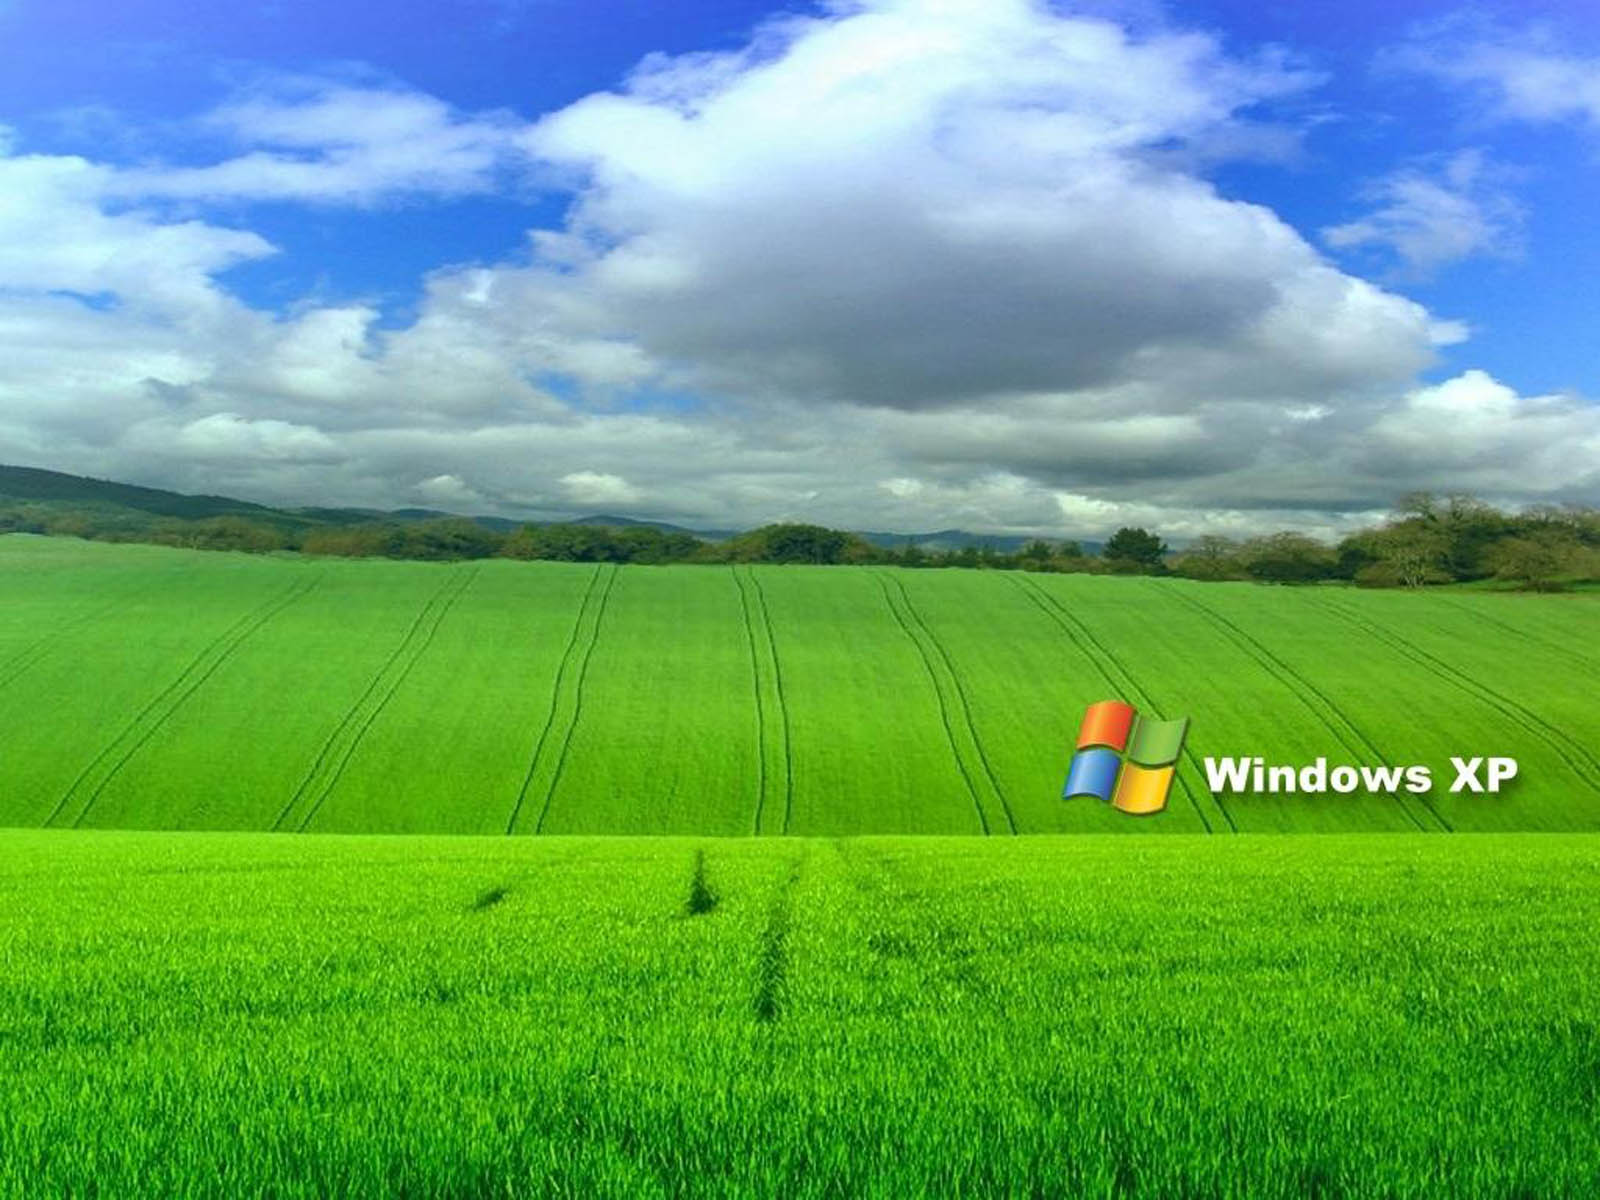 wallpapers Windows XP Desktop Wallpapers